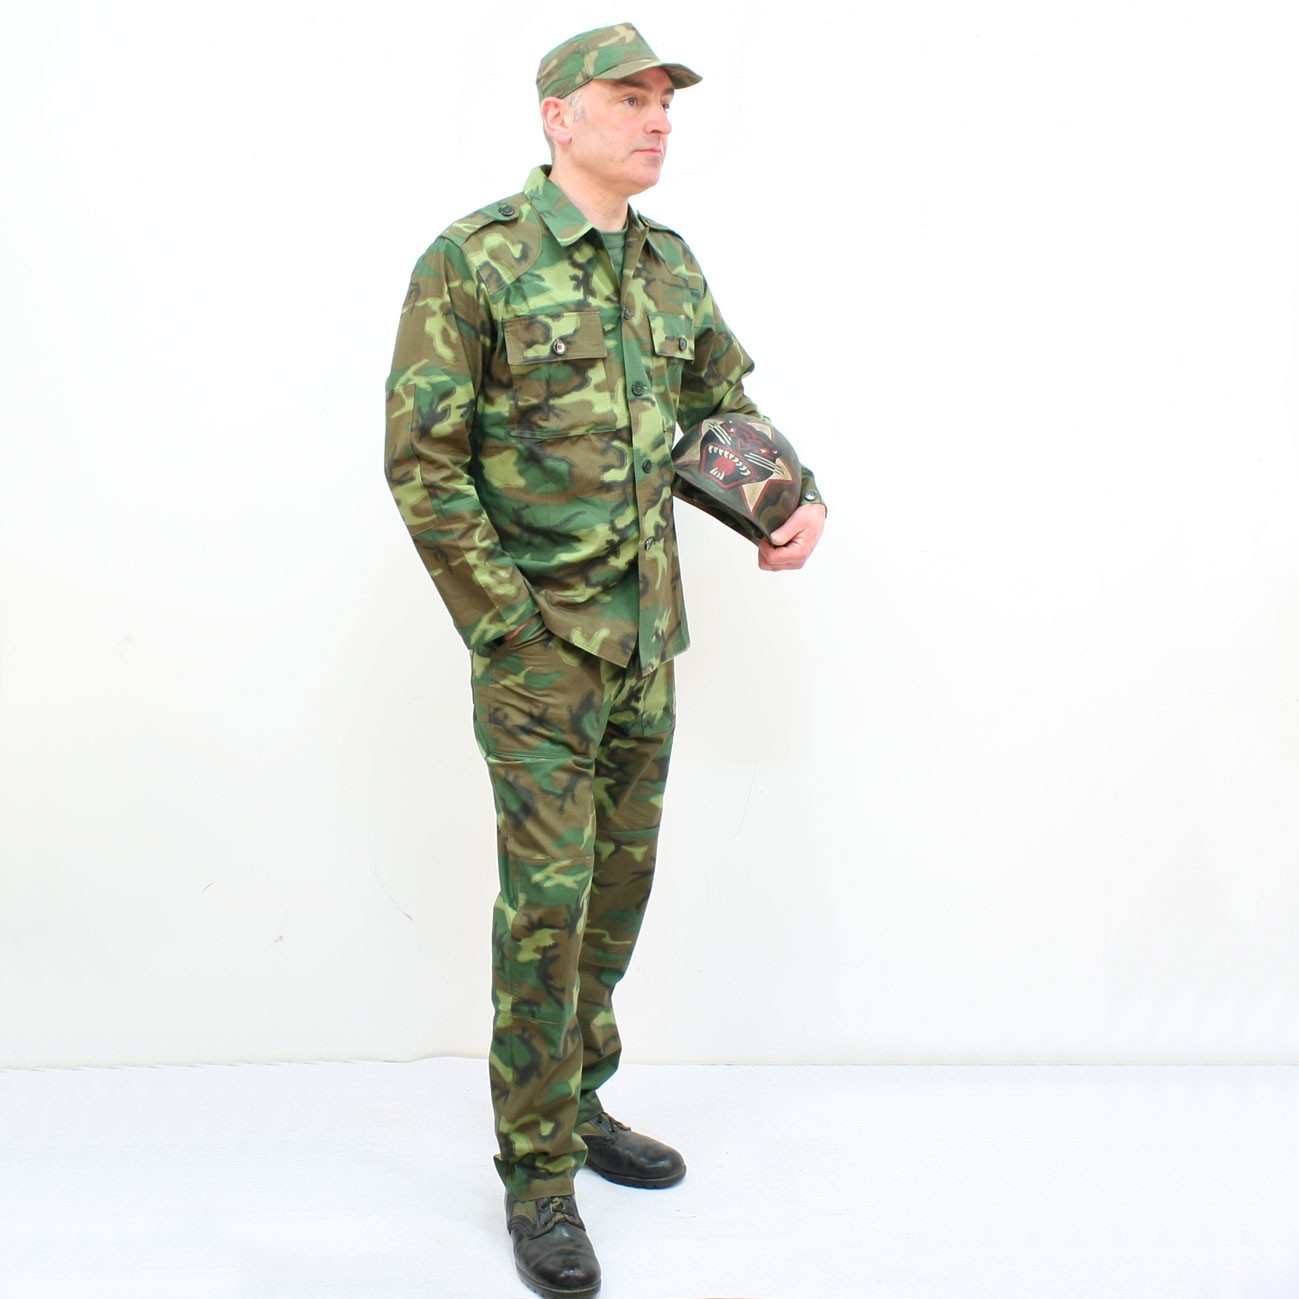 New this week ARVN Ranger camouflage uniform